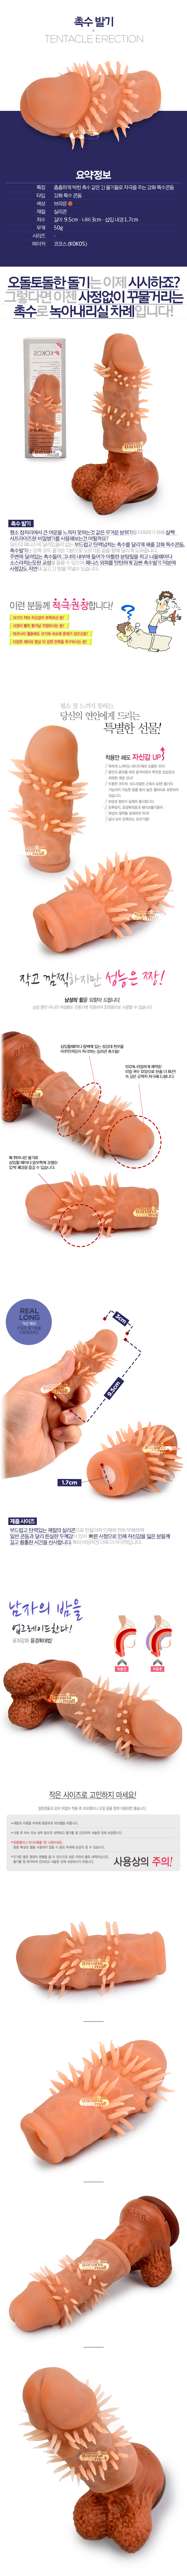 [특수 콘돔] 촉수 발기(Tentacle Erection) - 코코스